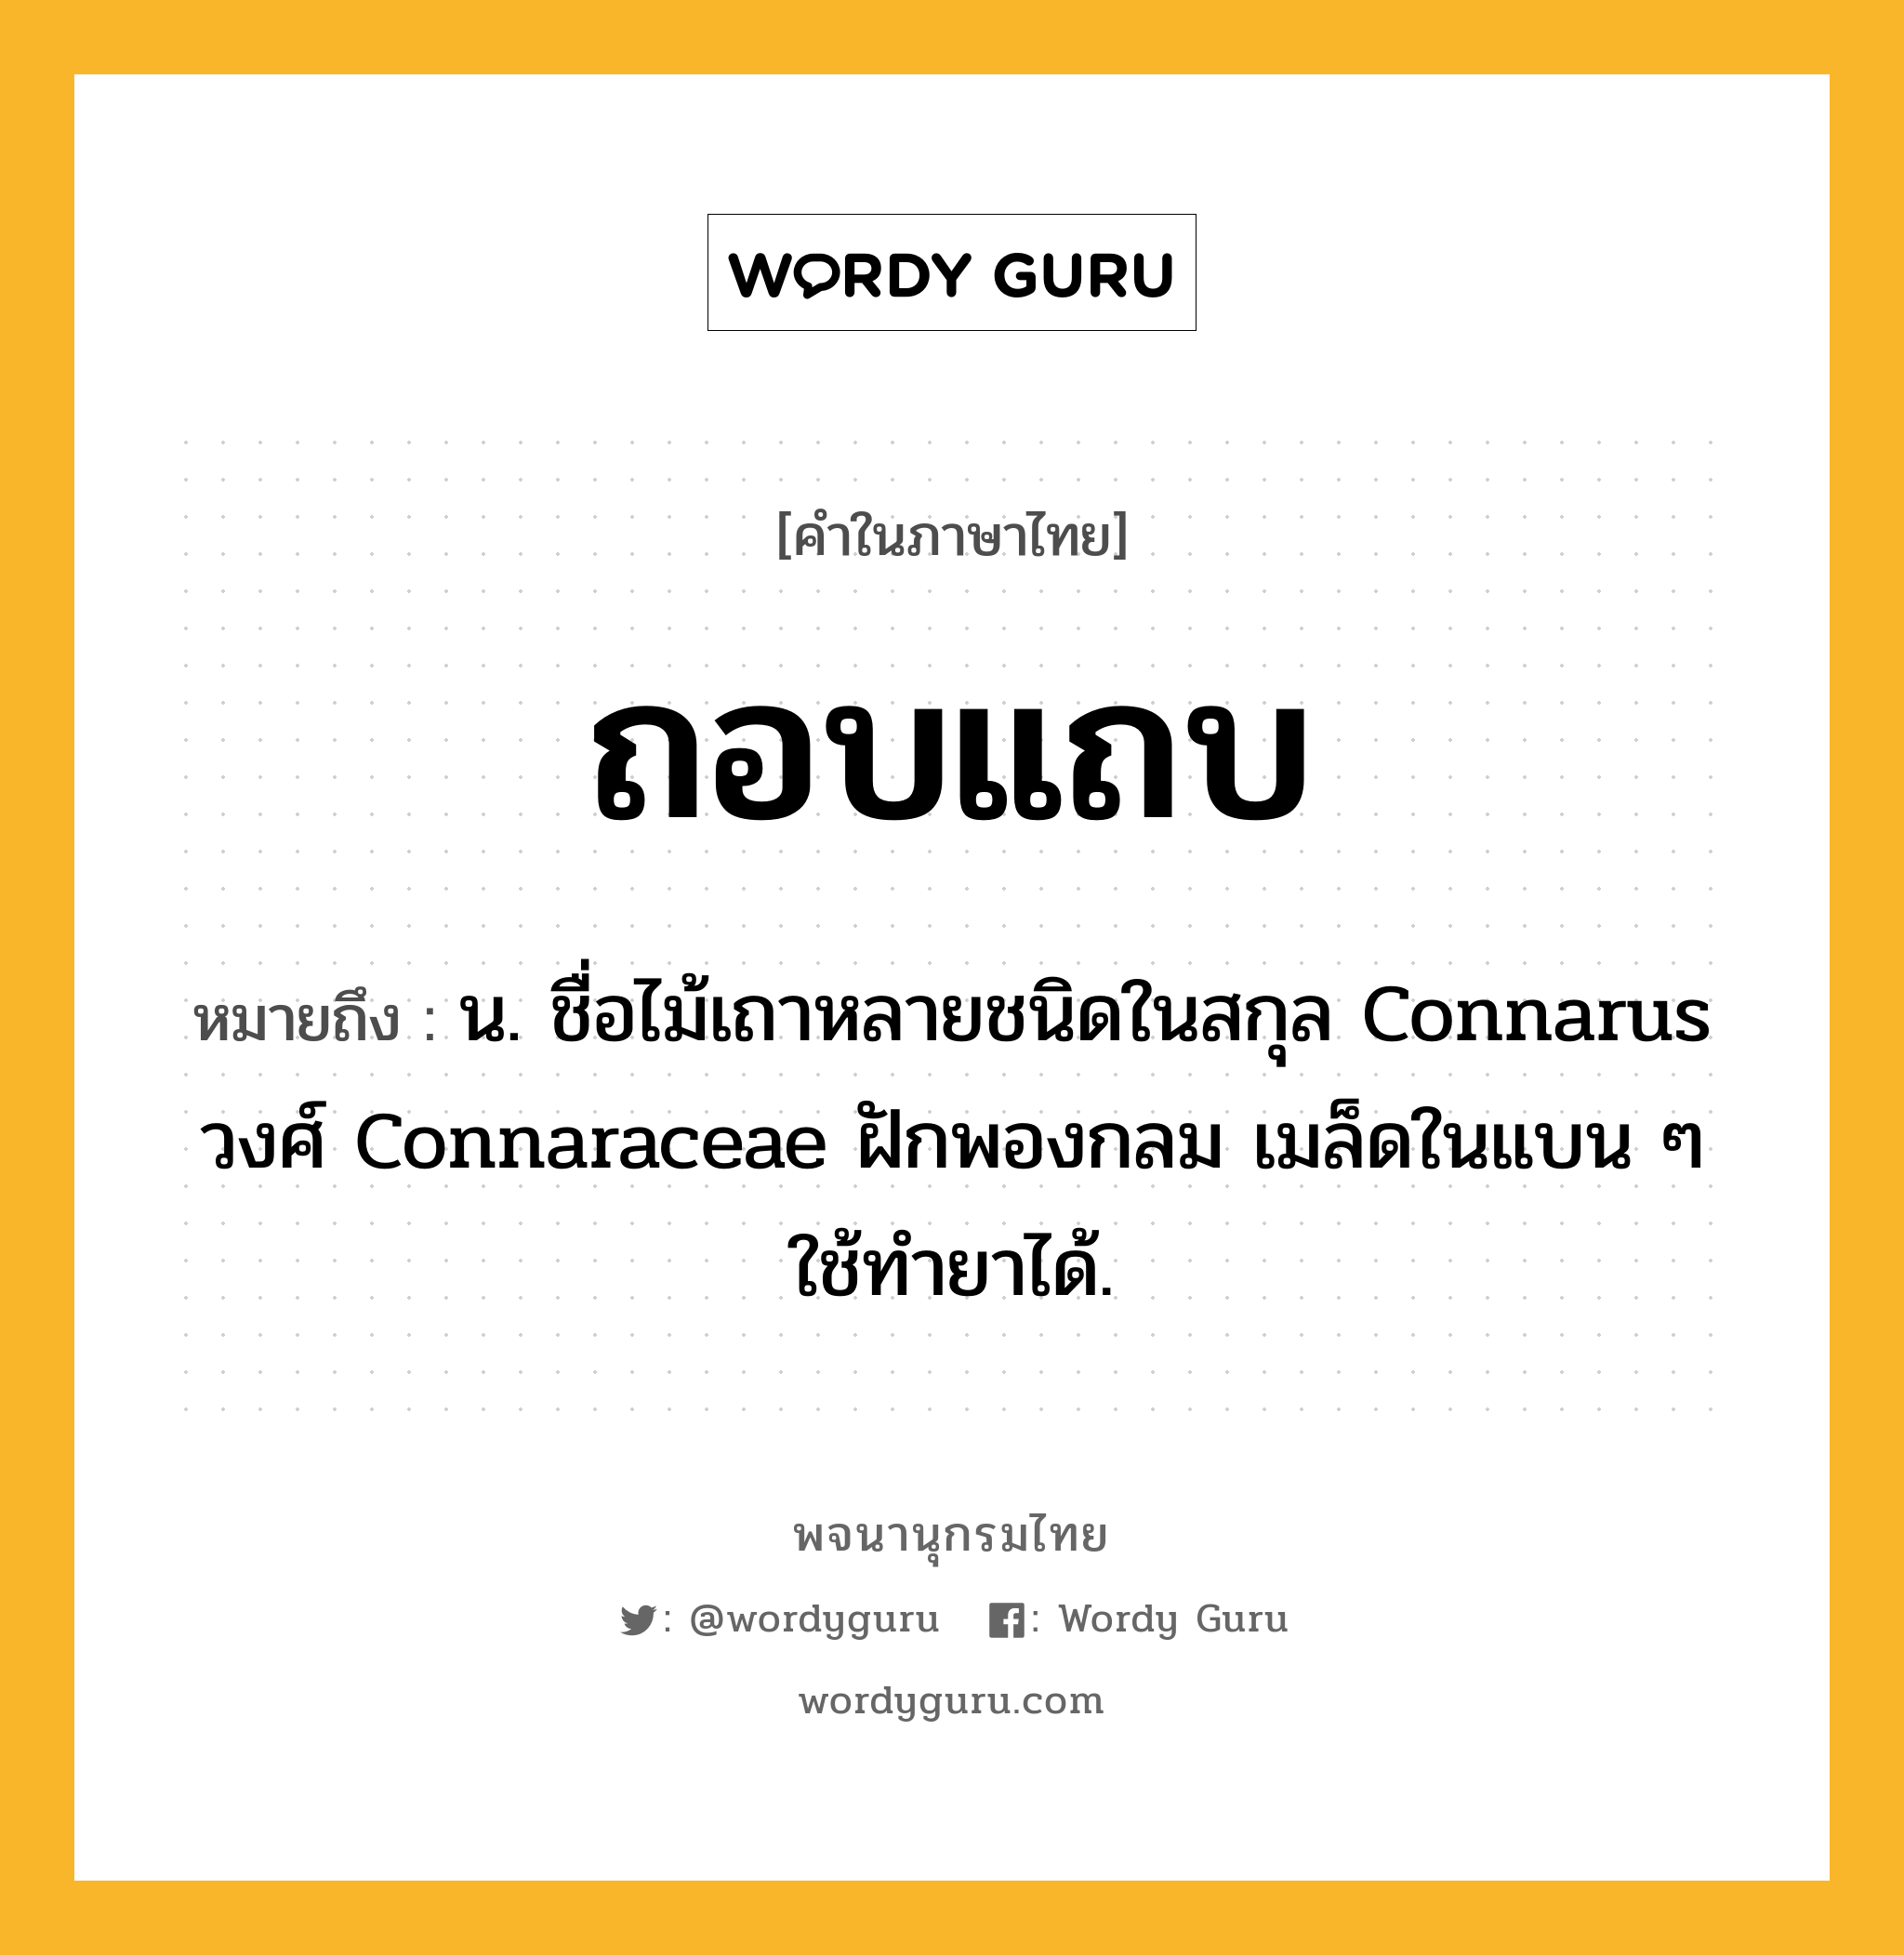 ถอบแถบ ความหมาย หมายถึงอะไร?, คำในภาษาไทย ถอบแถบ หมายถึง น. ชื่อไม้เถาหลายชนิดในสกุล Connarus วงศ์ Connaraceae ฝักพองกลม เมล็ดในแบน ๆ ใช้ทํายาได้.